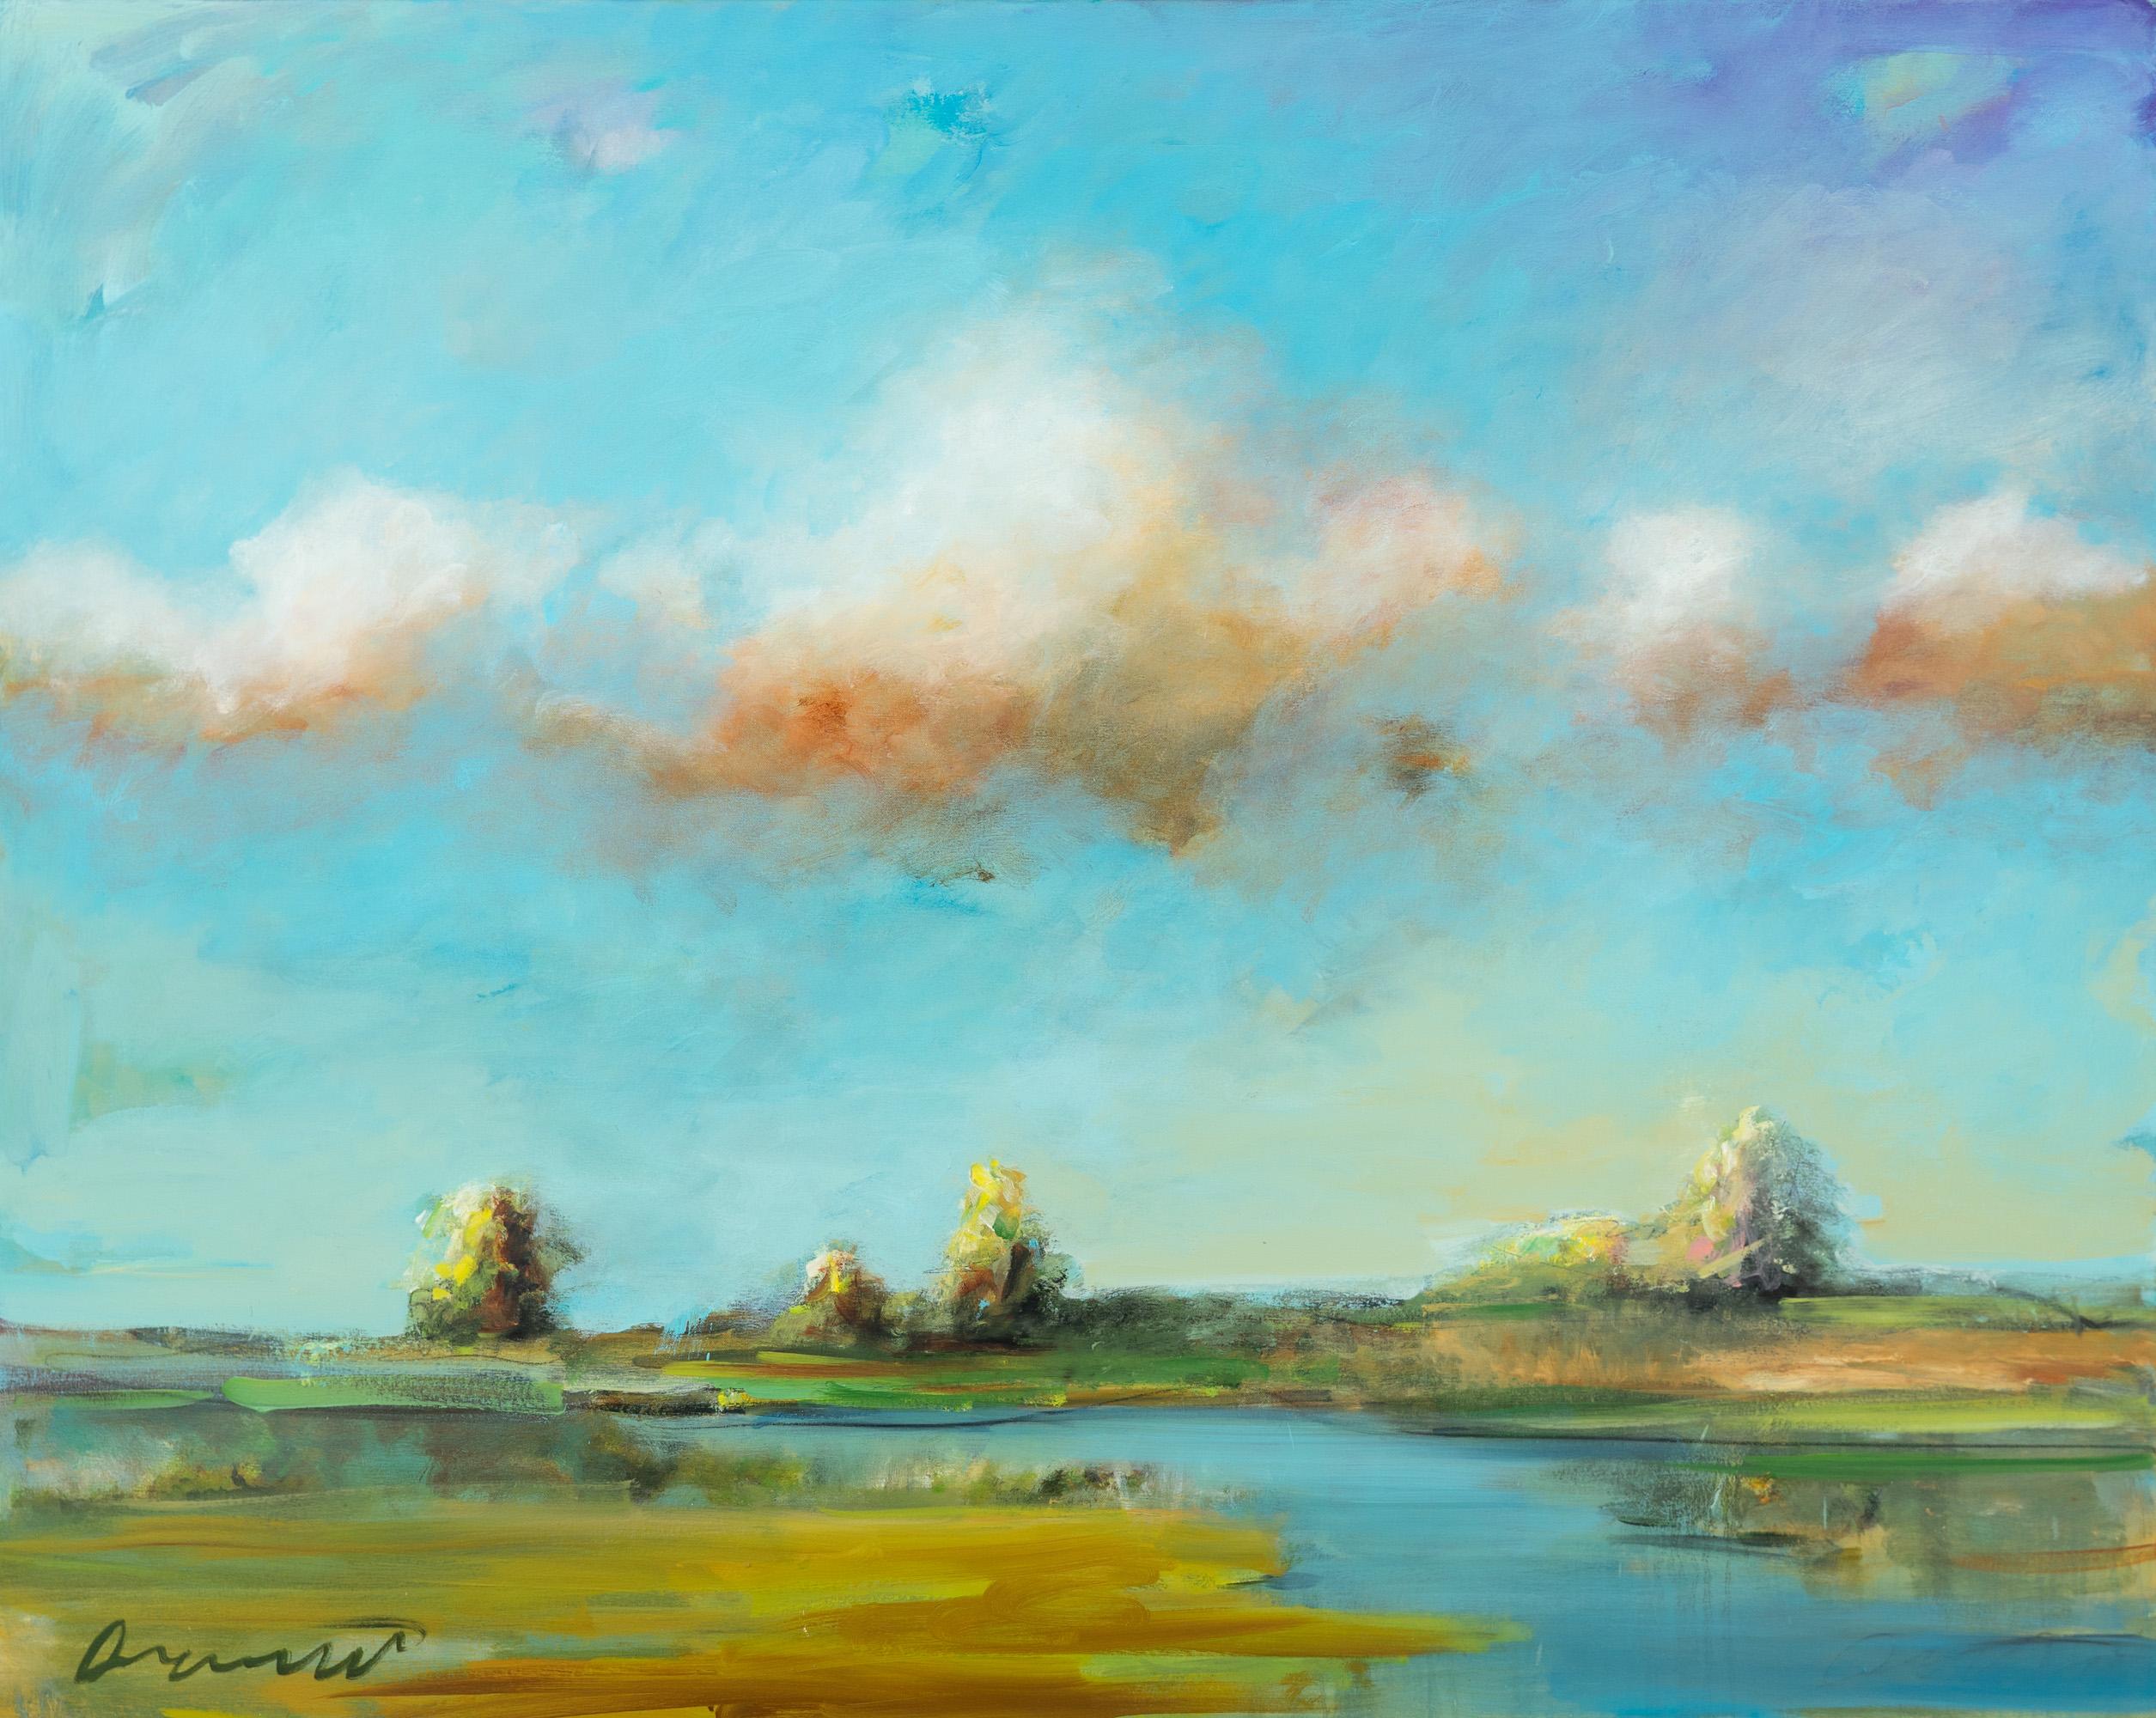 Landscape Painting Eric Abrecht - "Tributaire III" Paysage contemporain Paysage aquatique Huile sur toile